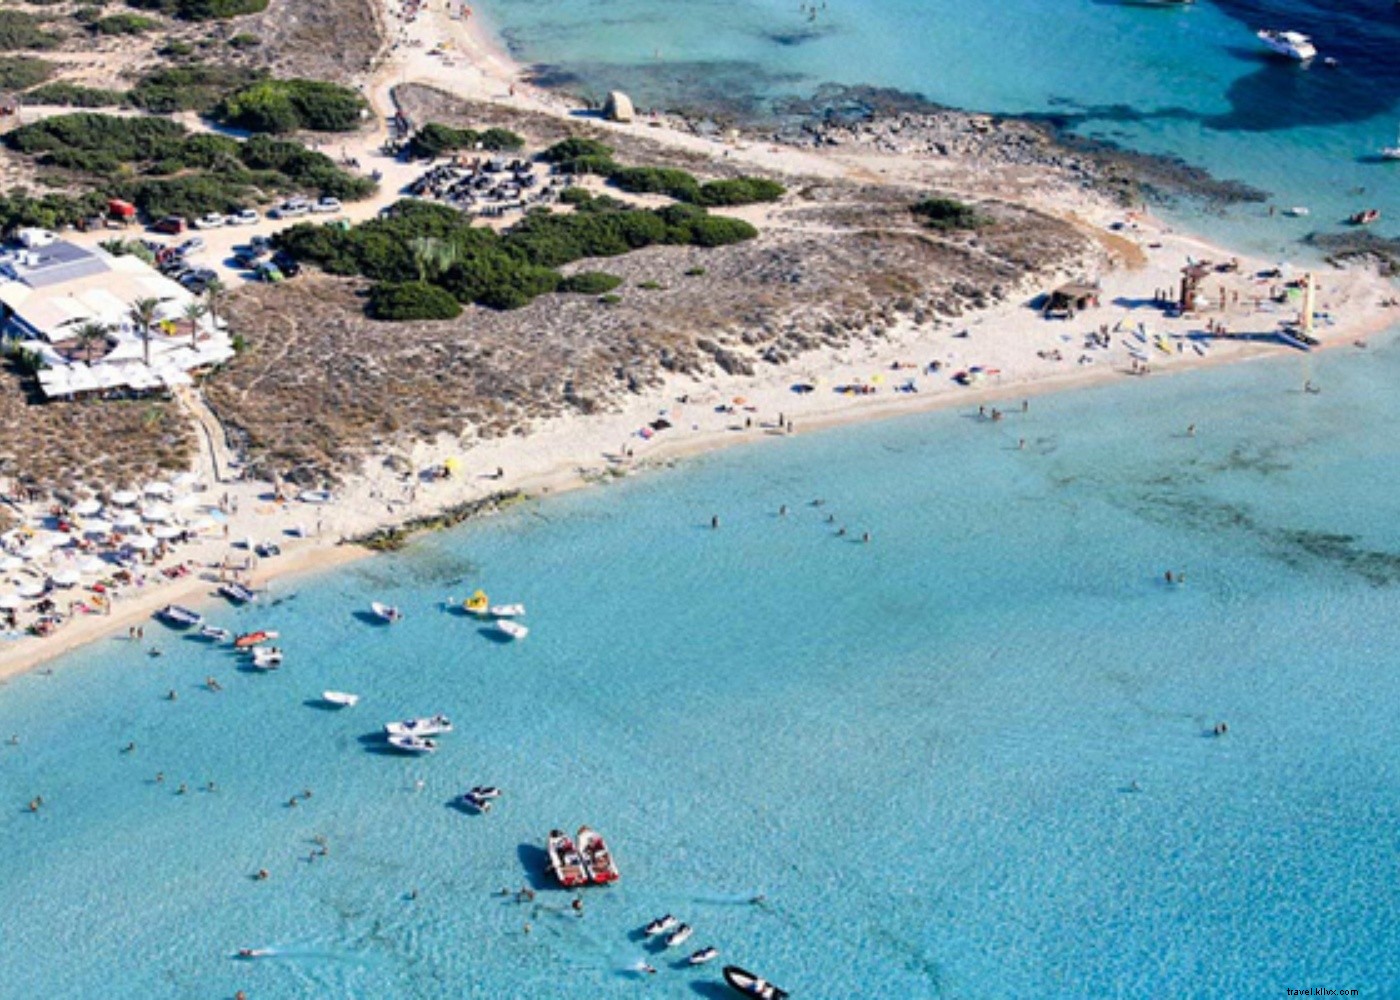 Dai tramonti alle spiagge turchesi:la vita sull isola di Formentera 